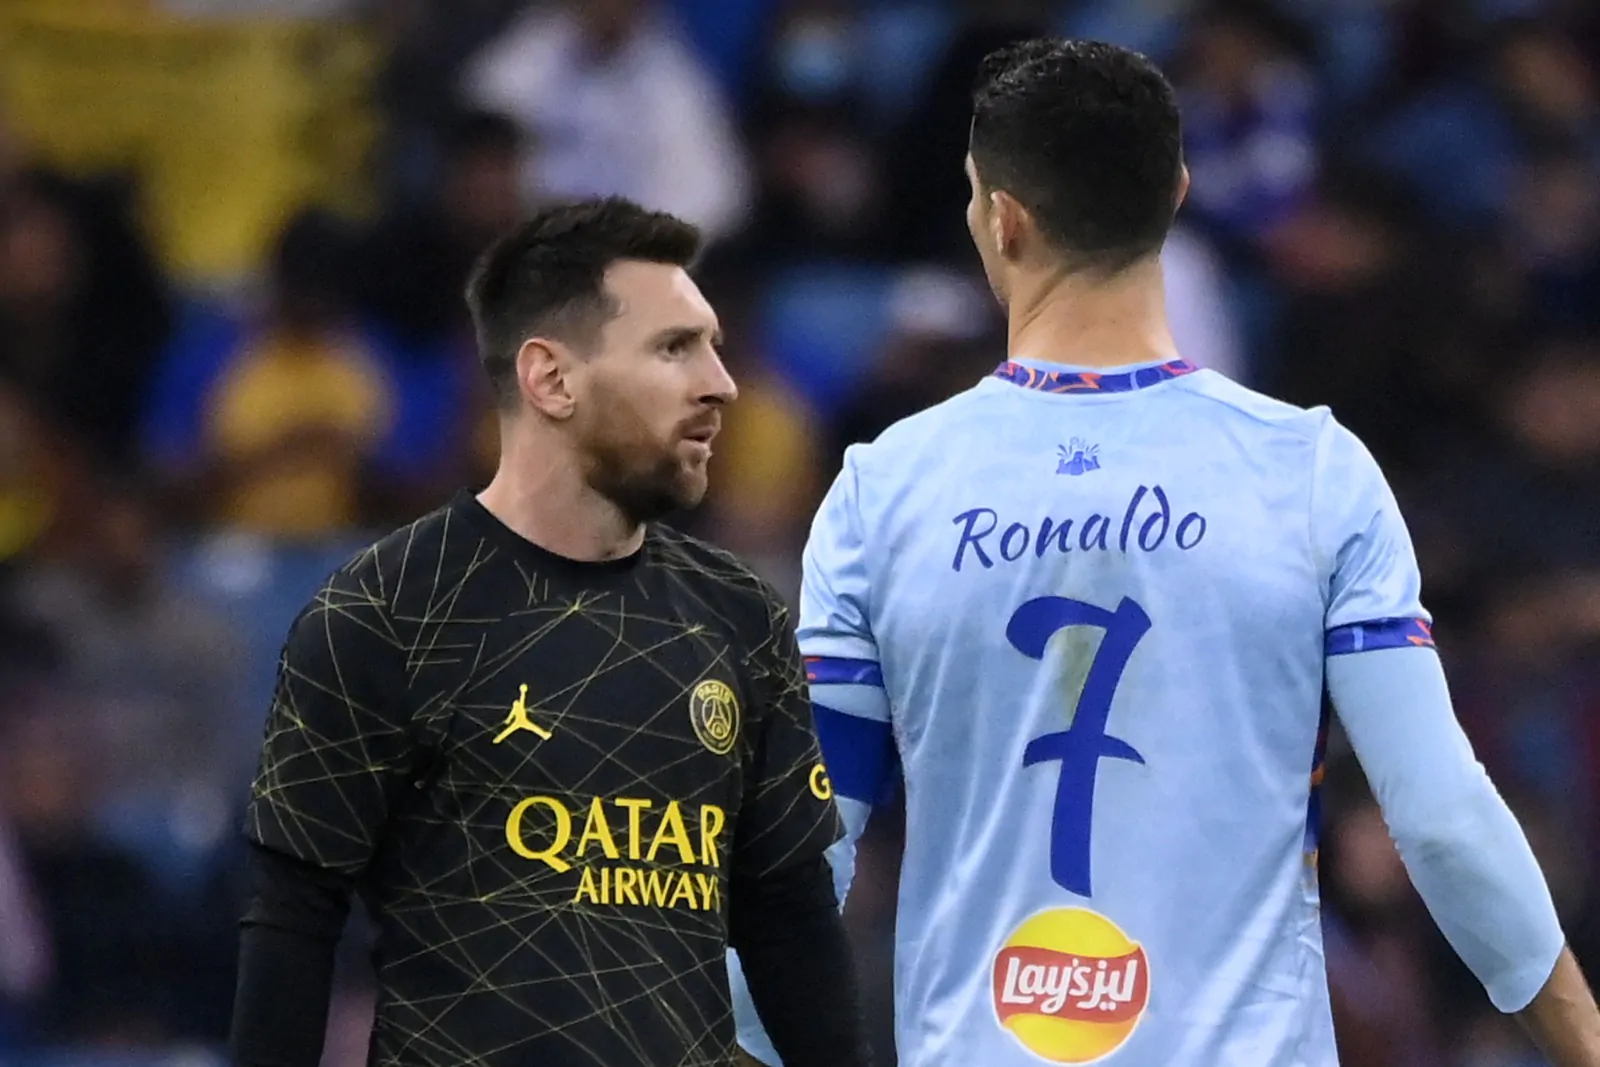 Messi vs Ronaldo in Arabia? Spunta l’offerta folle per averlo subito!